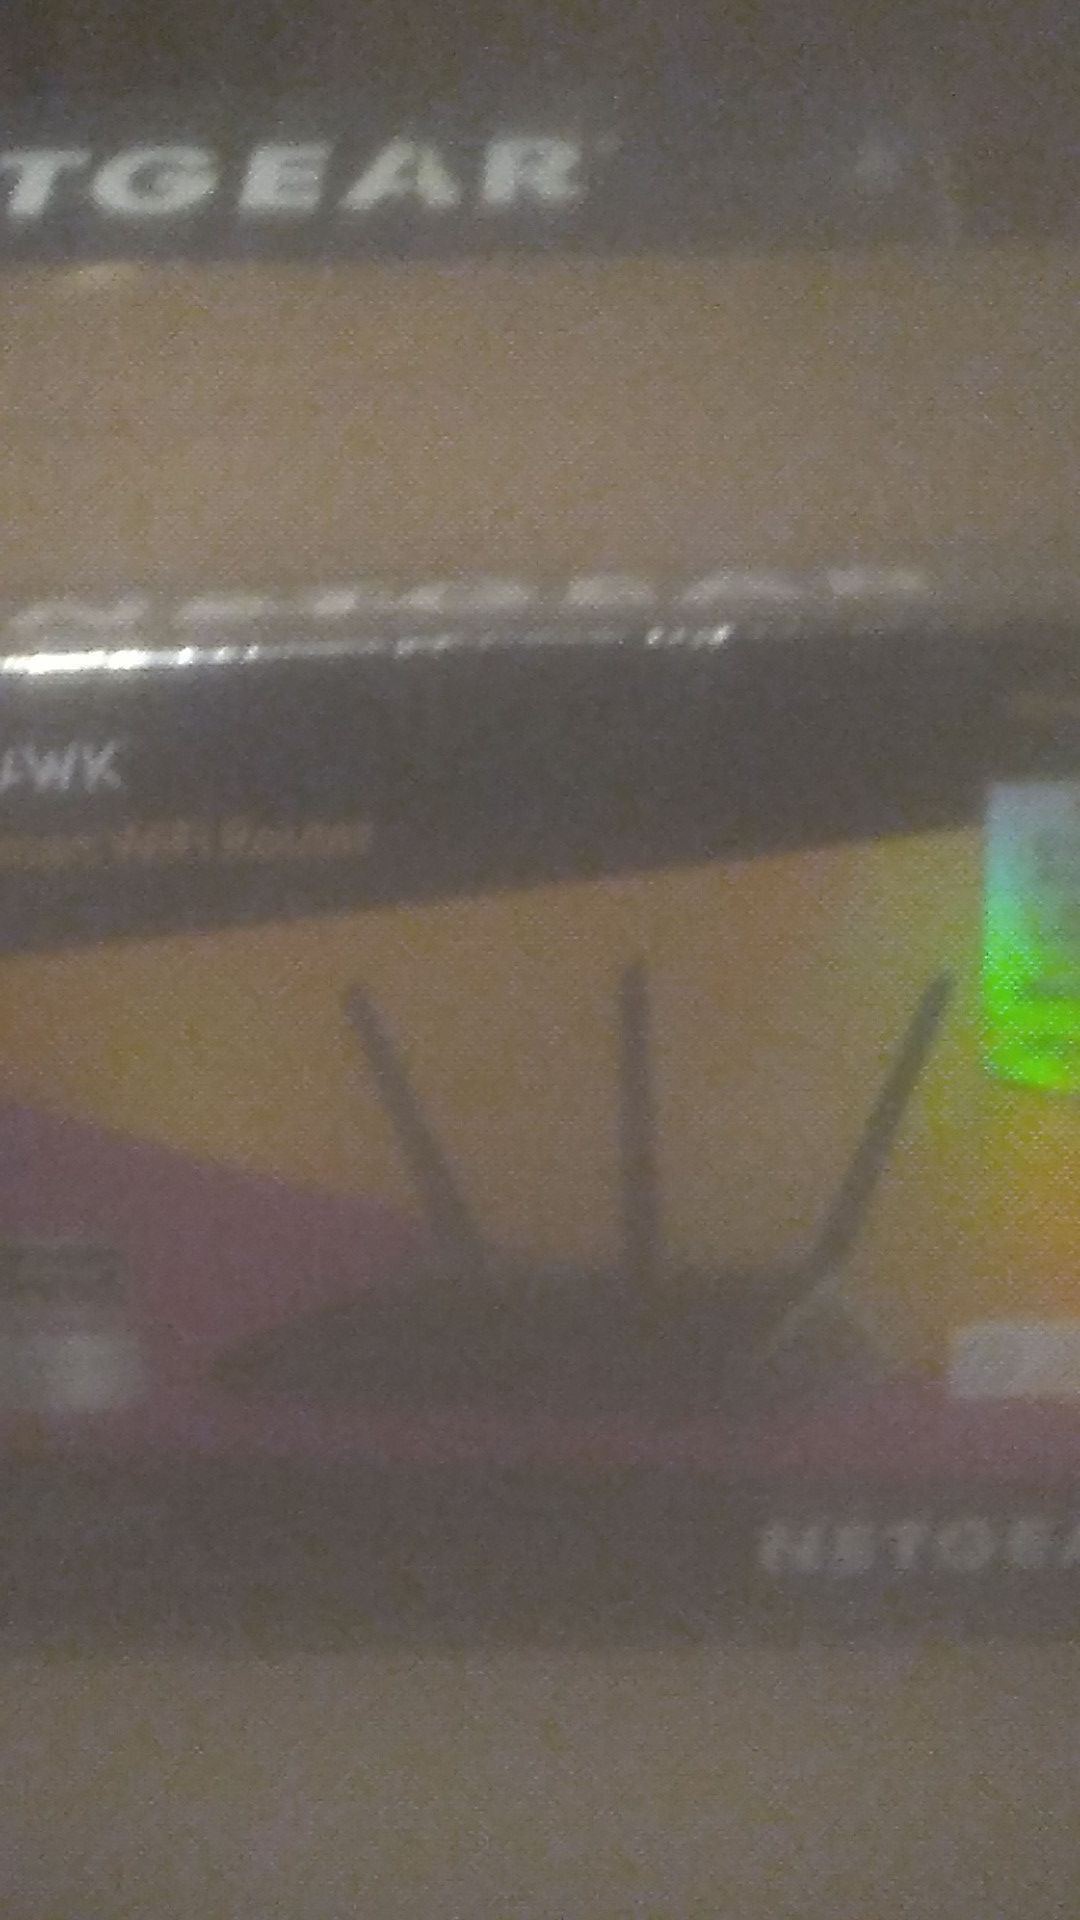 Netgear . NIGHTHAWK AC2300 SMART WIFI ROUTER